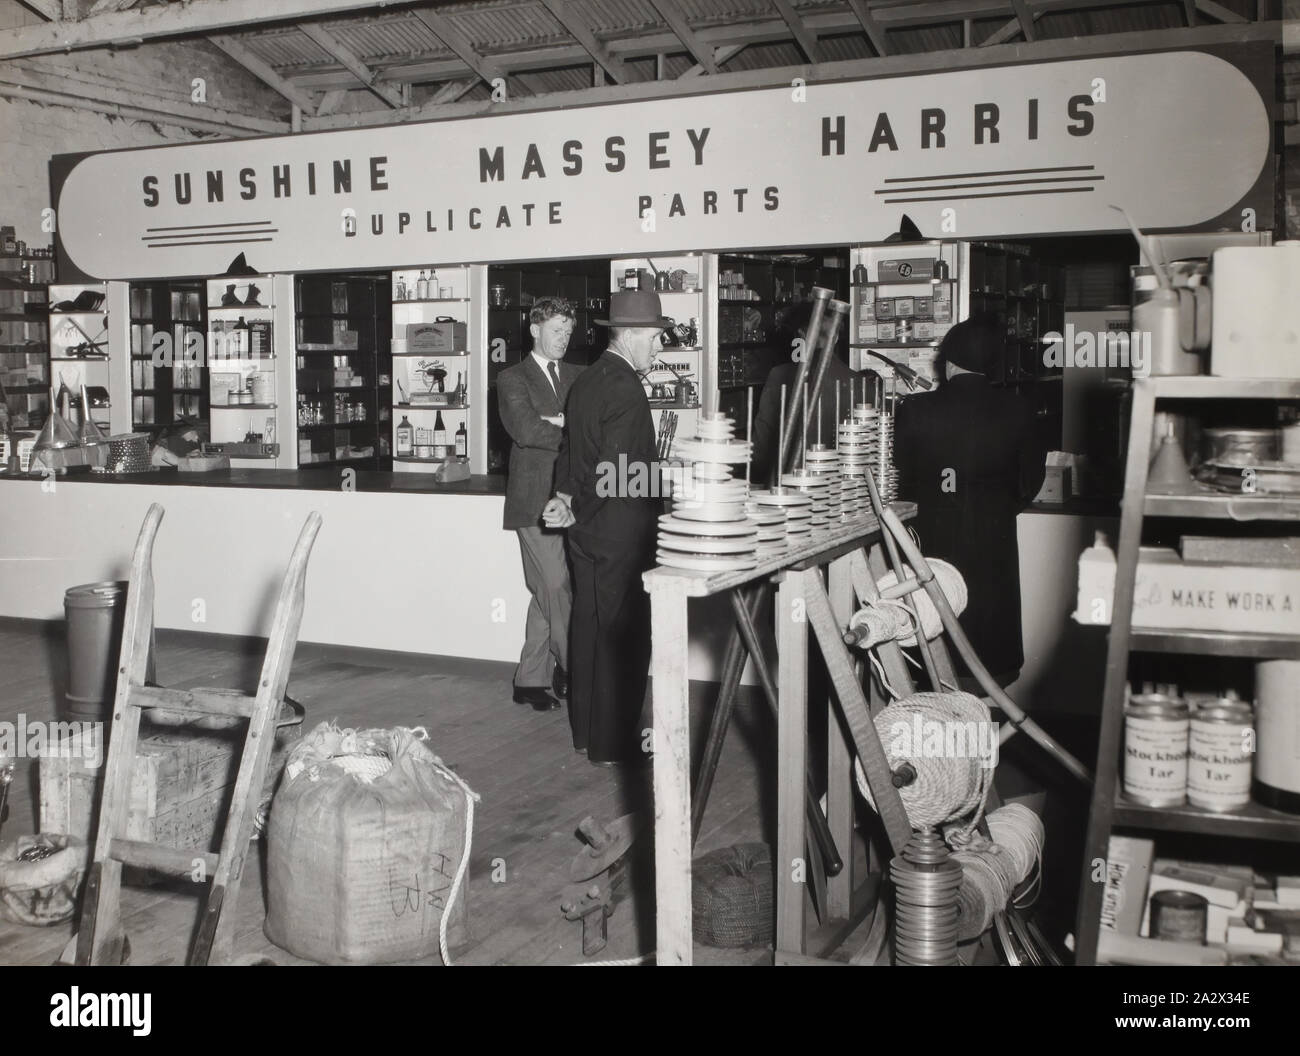 Fotografie - H.V. McKay Massey Harris, Duplizieren Ersatzteillager,  Victoria, 1952, schwarz-weiß Foto des H.V McKay Massey Harris Duplikate  Depot in Victoria. Aus einem Fotoalbum mit einhundert und vier schwarz-weiß  Fotografien und drei